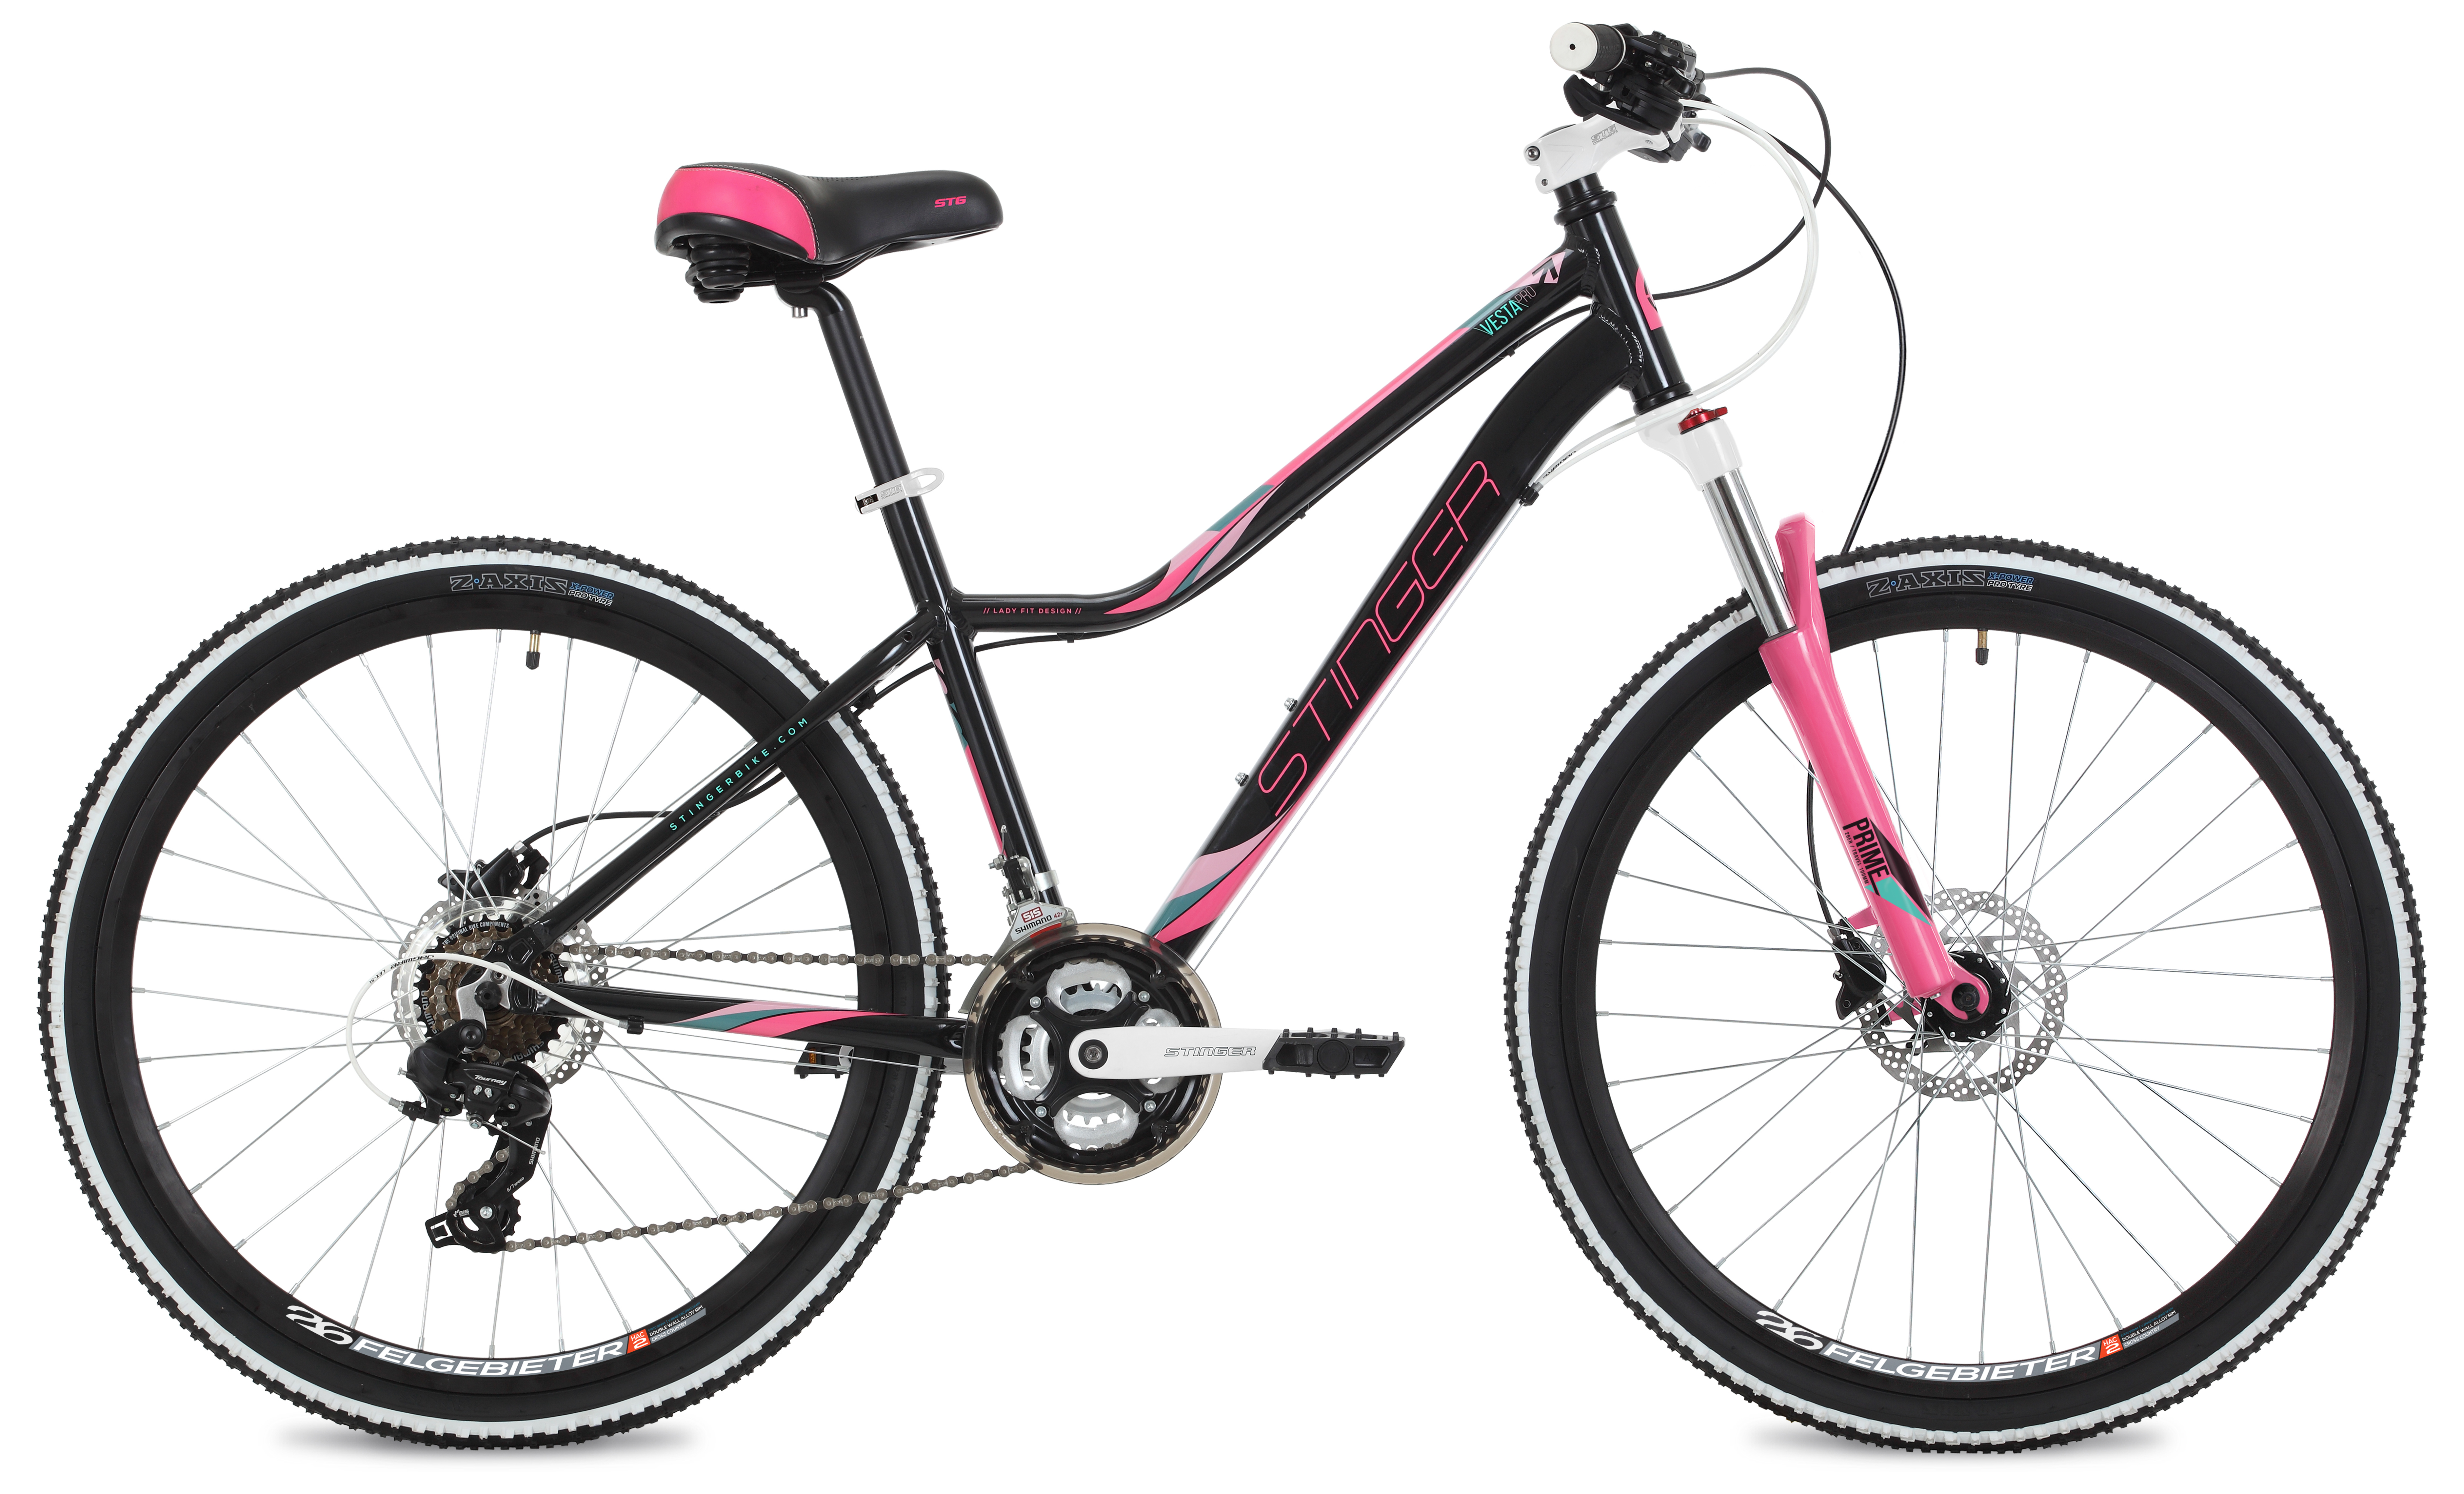  Отзывы о Женском велосипеде Stinger Vesta Pro 26 2019